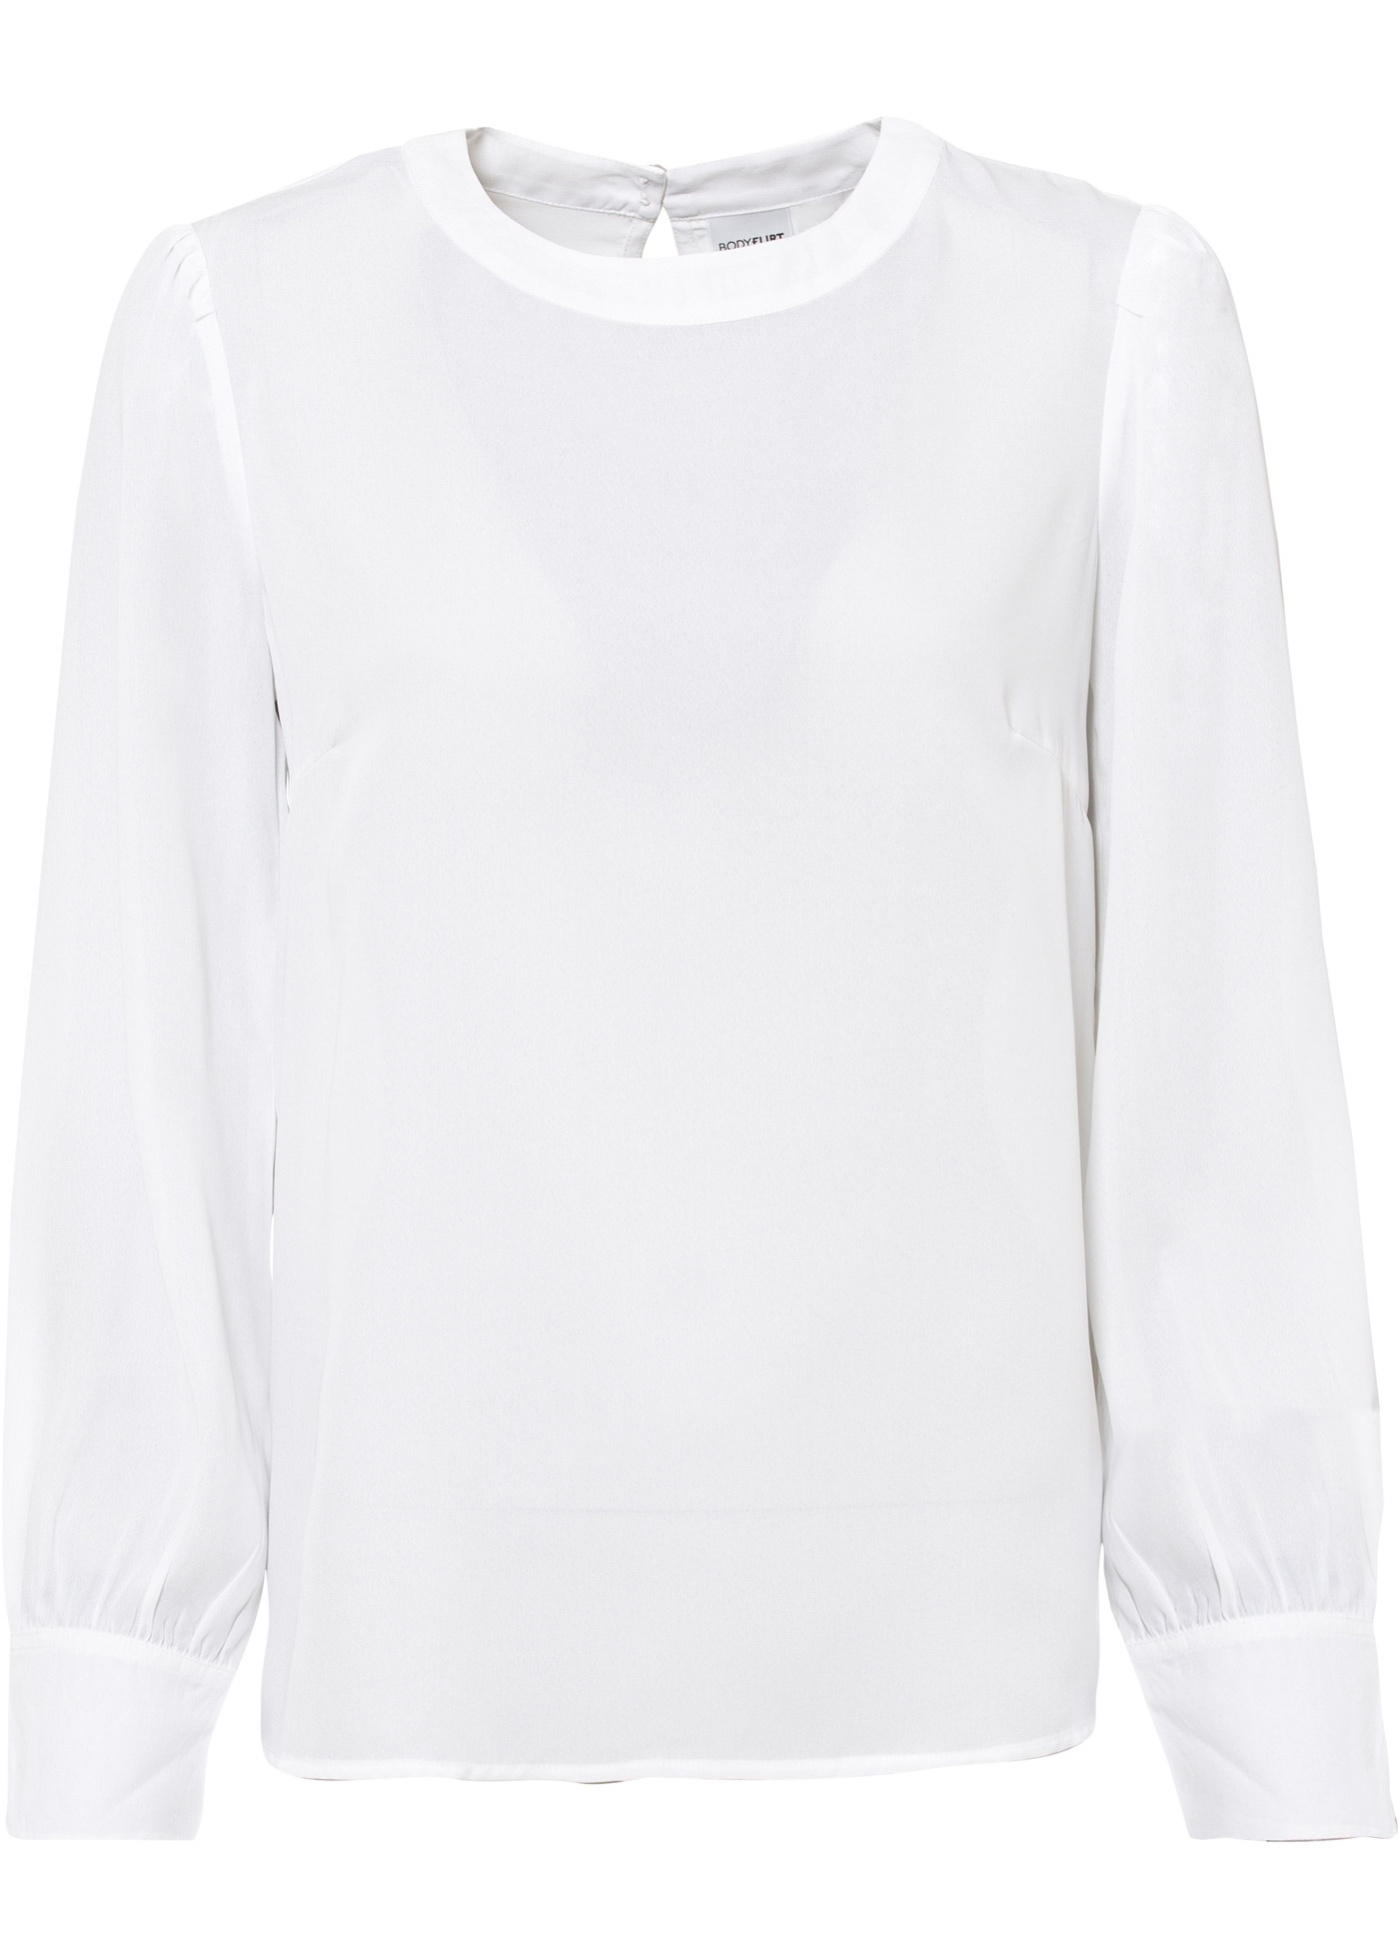 Charismatische Bluse mit stylischem Puffärmel. (96039781) in weiß